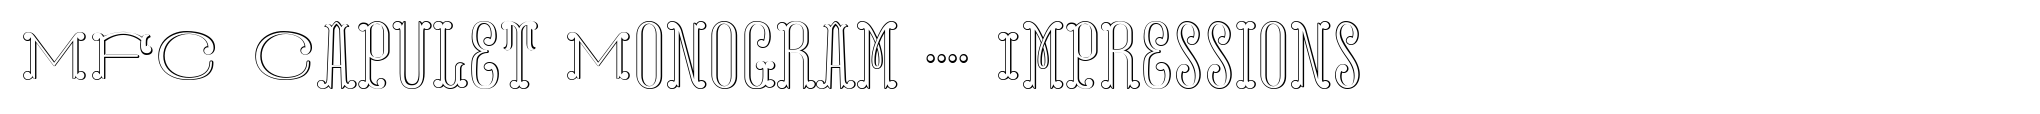 MFC Capulet Monogram 1000 Impressions image